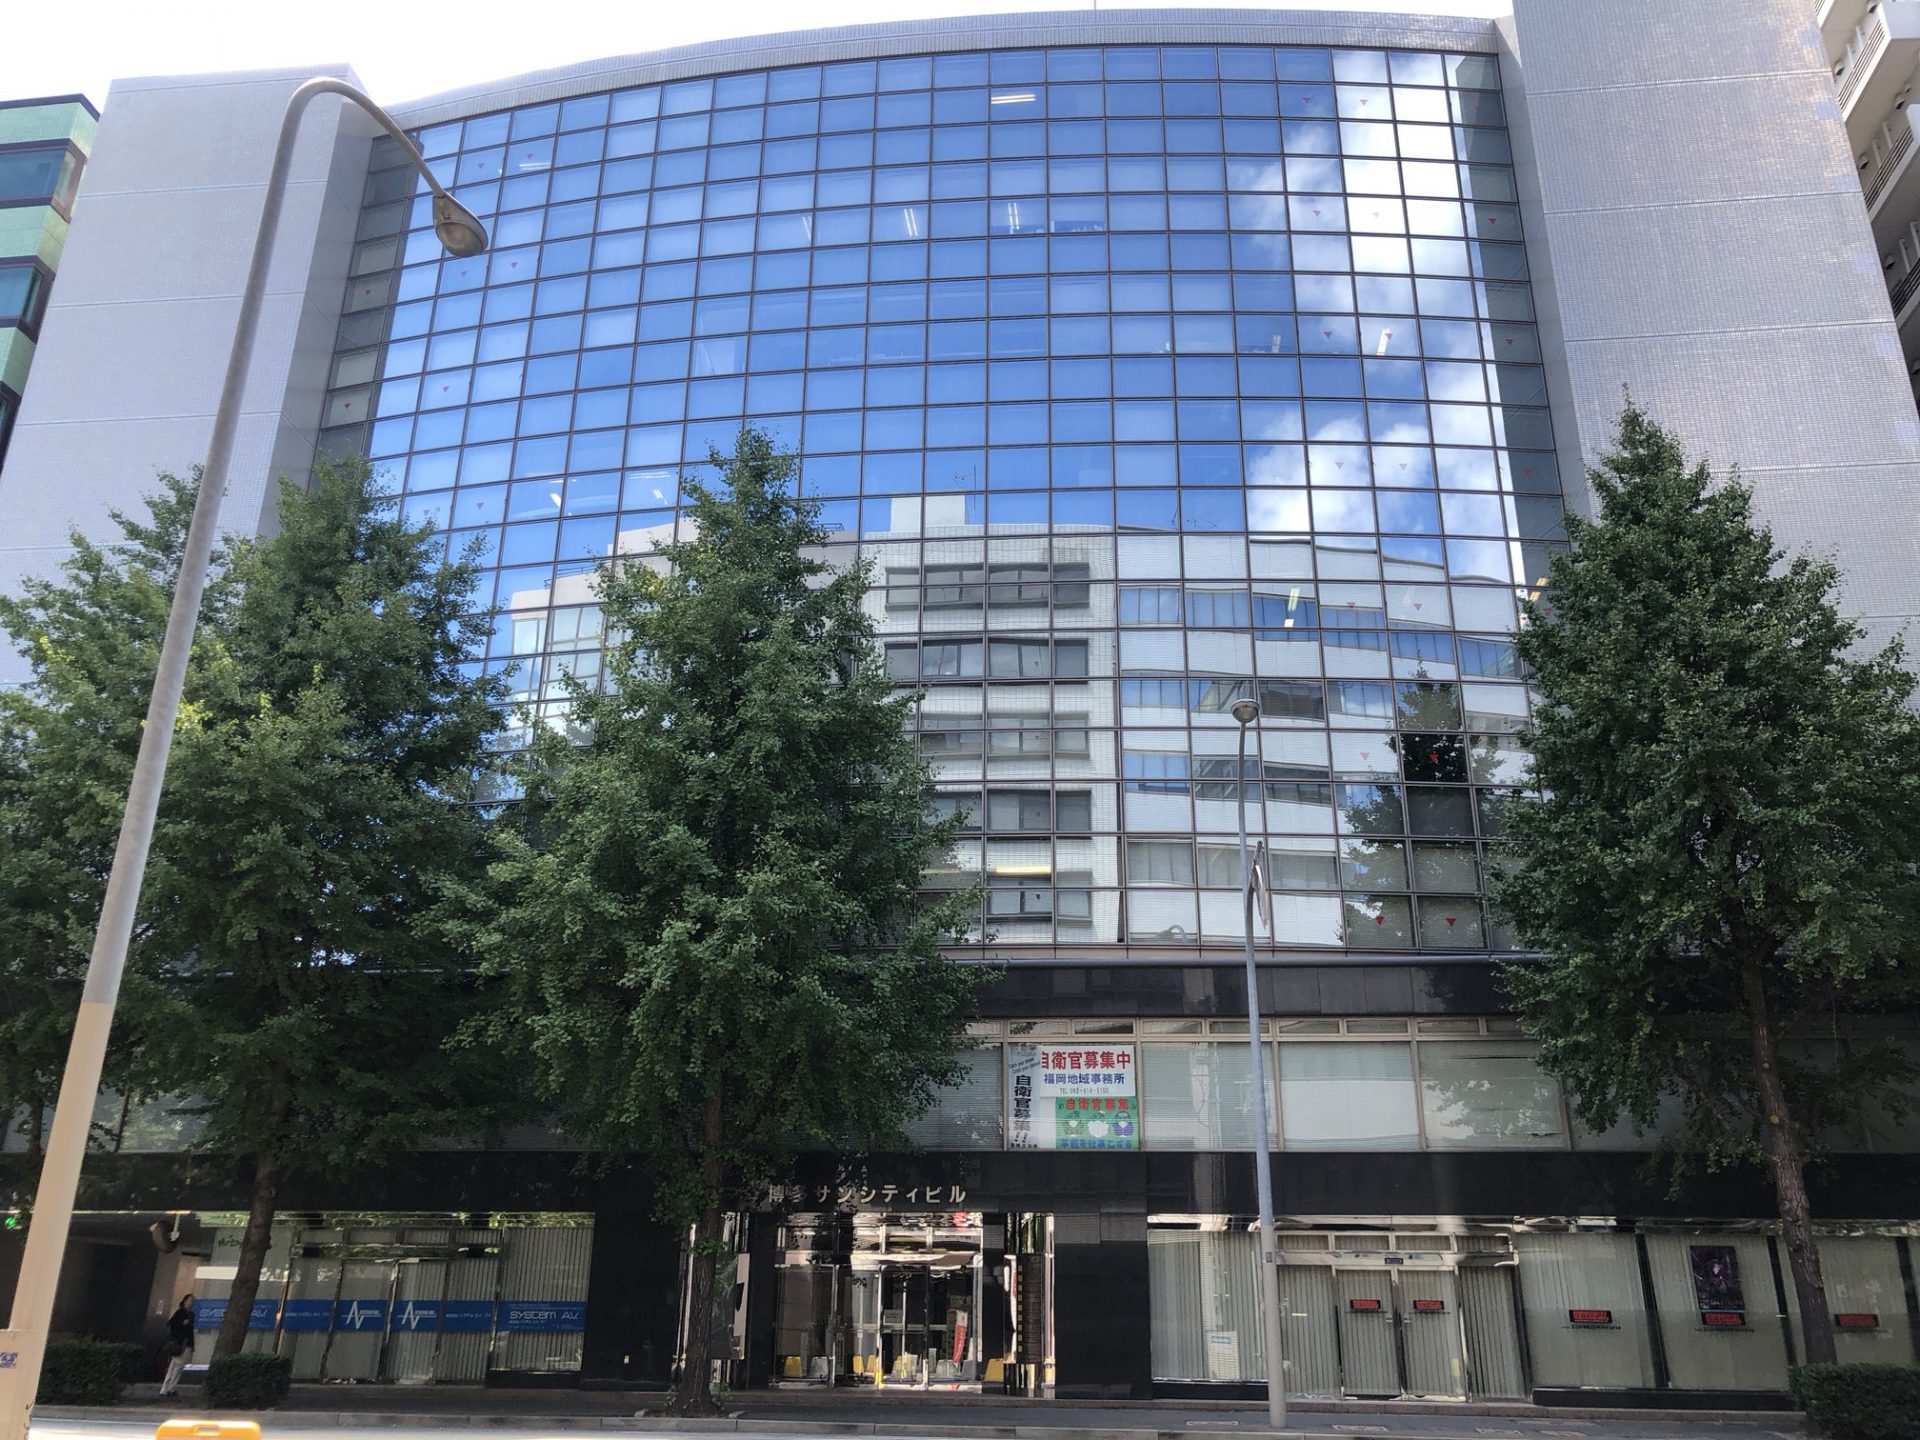 戸田総合法律事務所